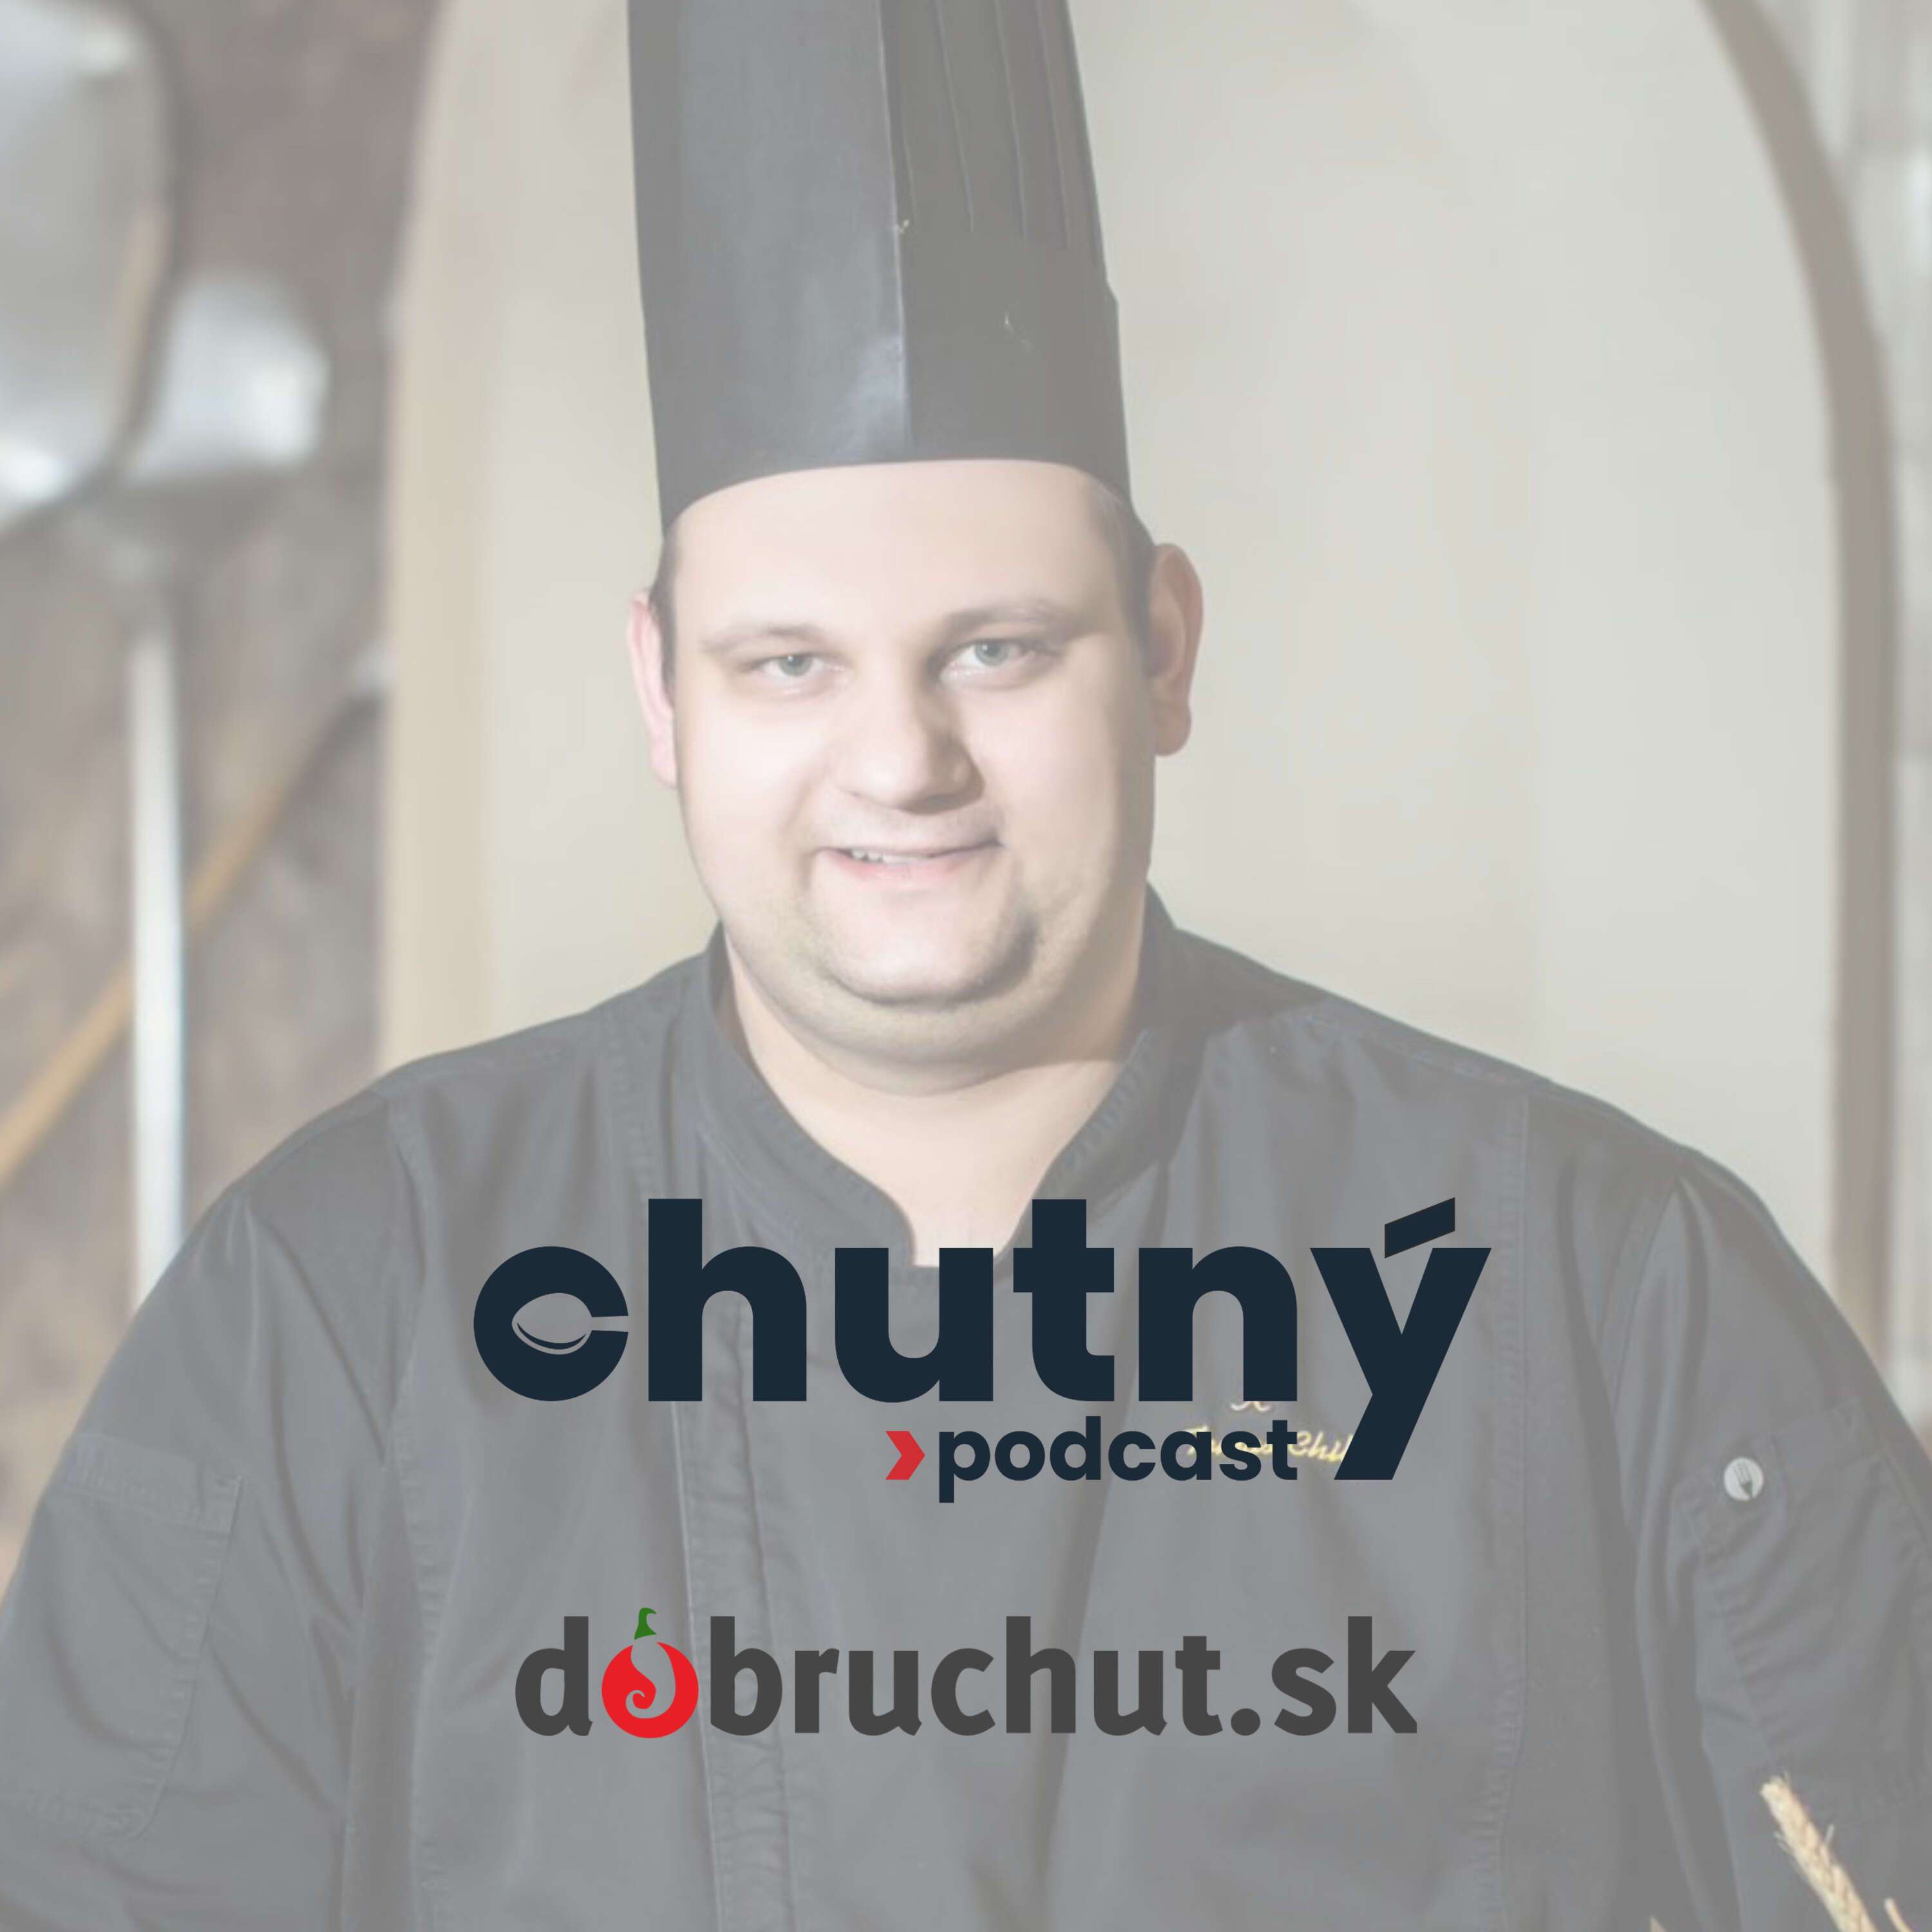 Chutný podcast - Tomáš Chilý